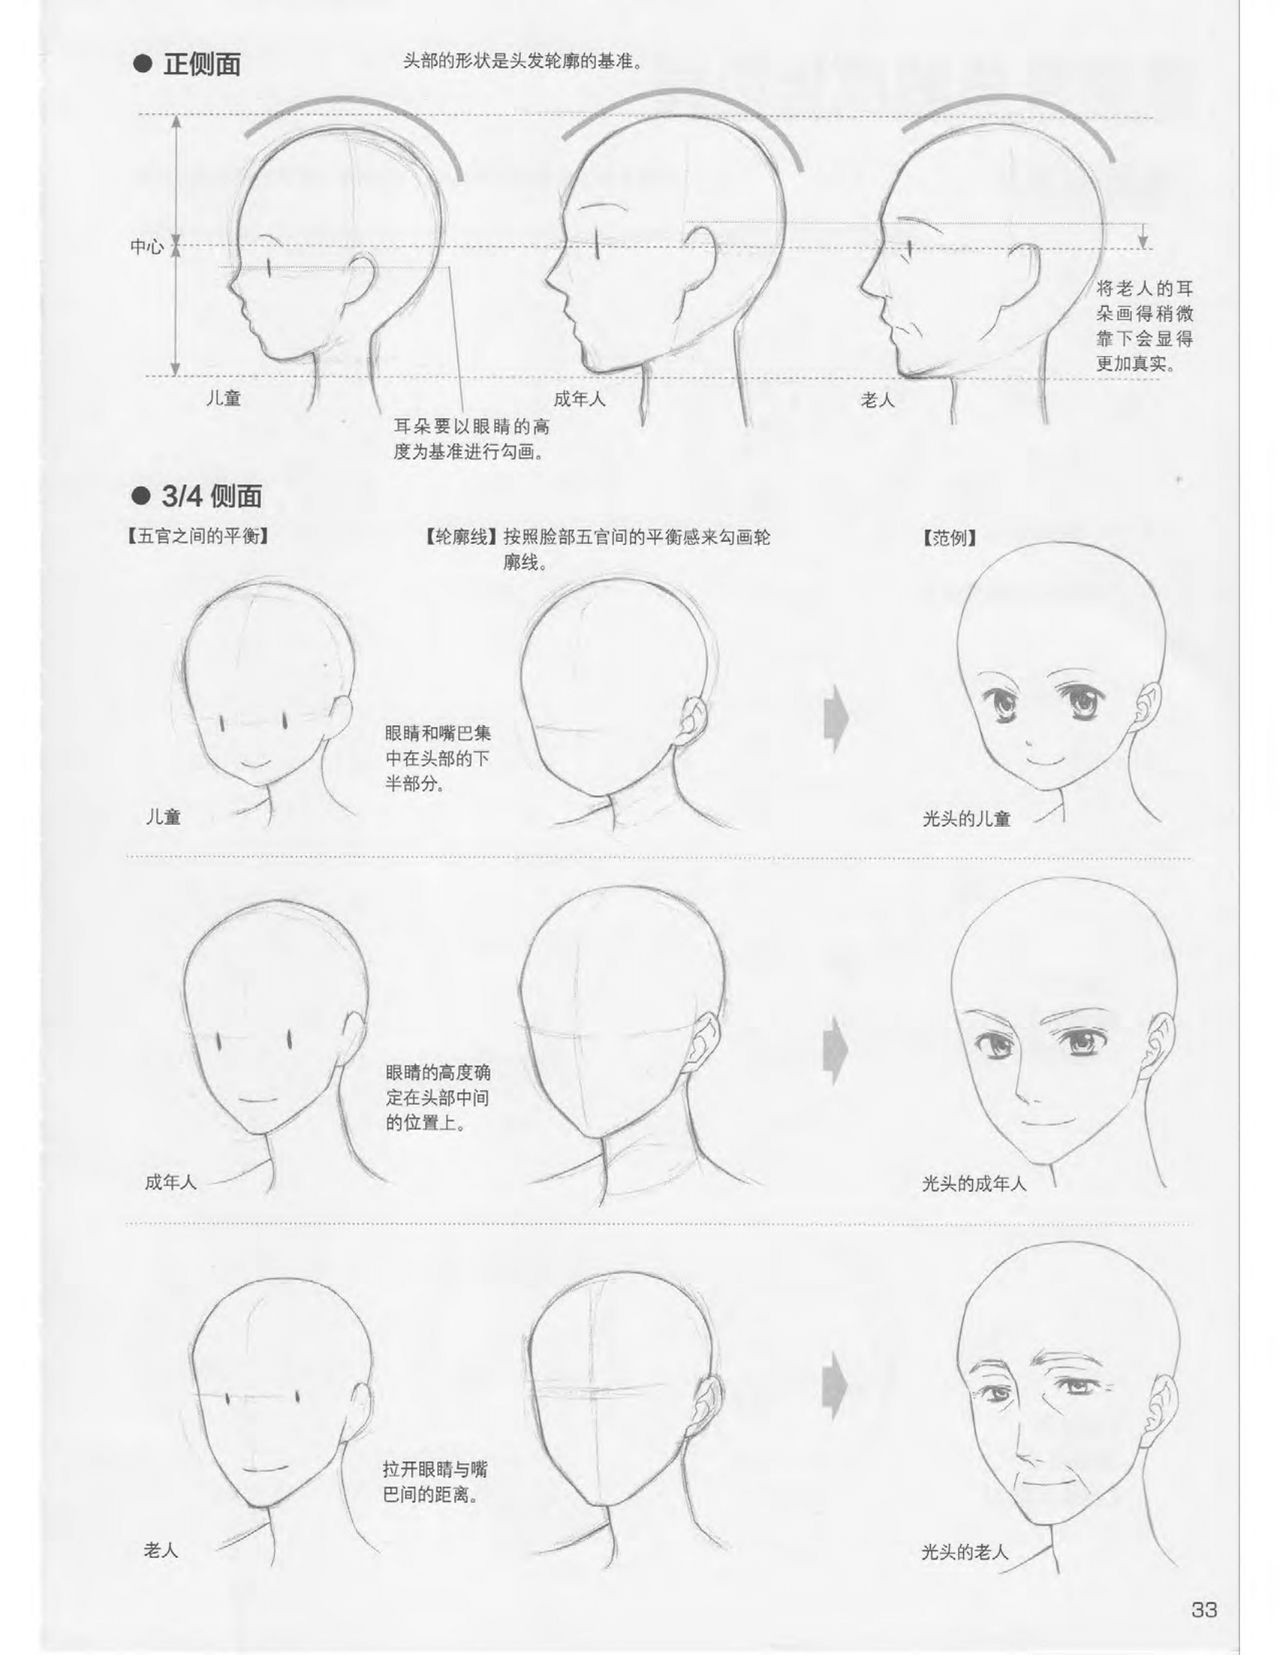 Japanese Manga Master Lecture 3: Lin Akira and Kakumaru Maru Talk About Glamorous Character Modeling 33